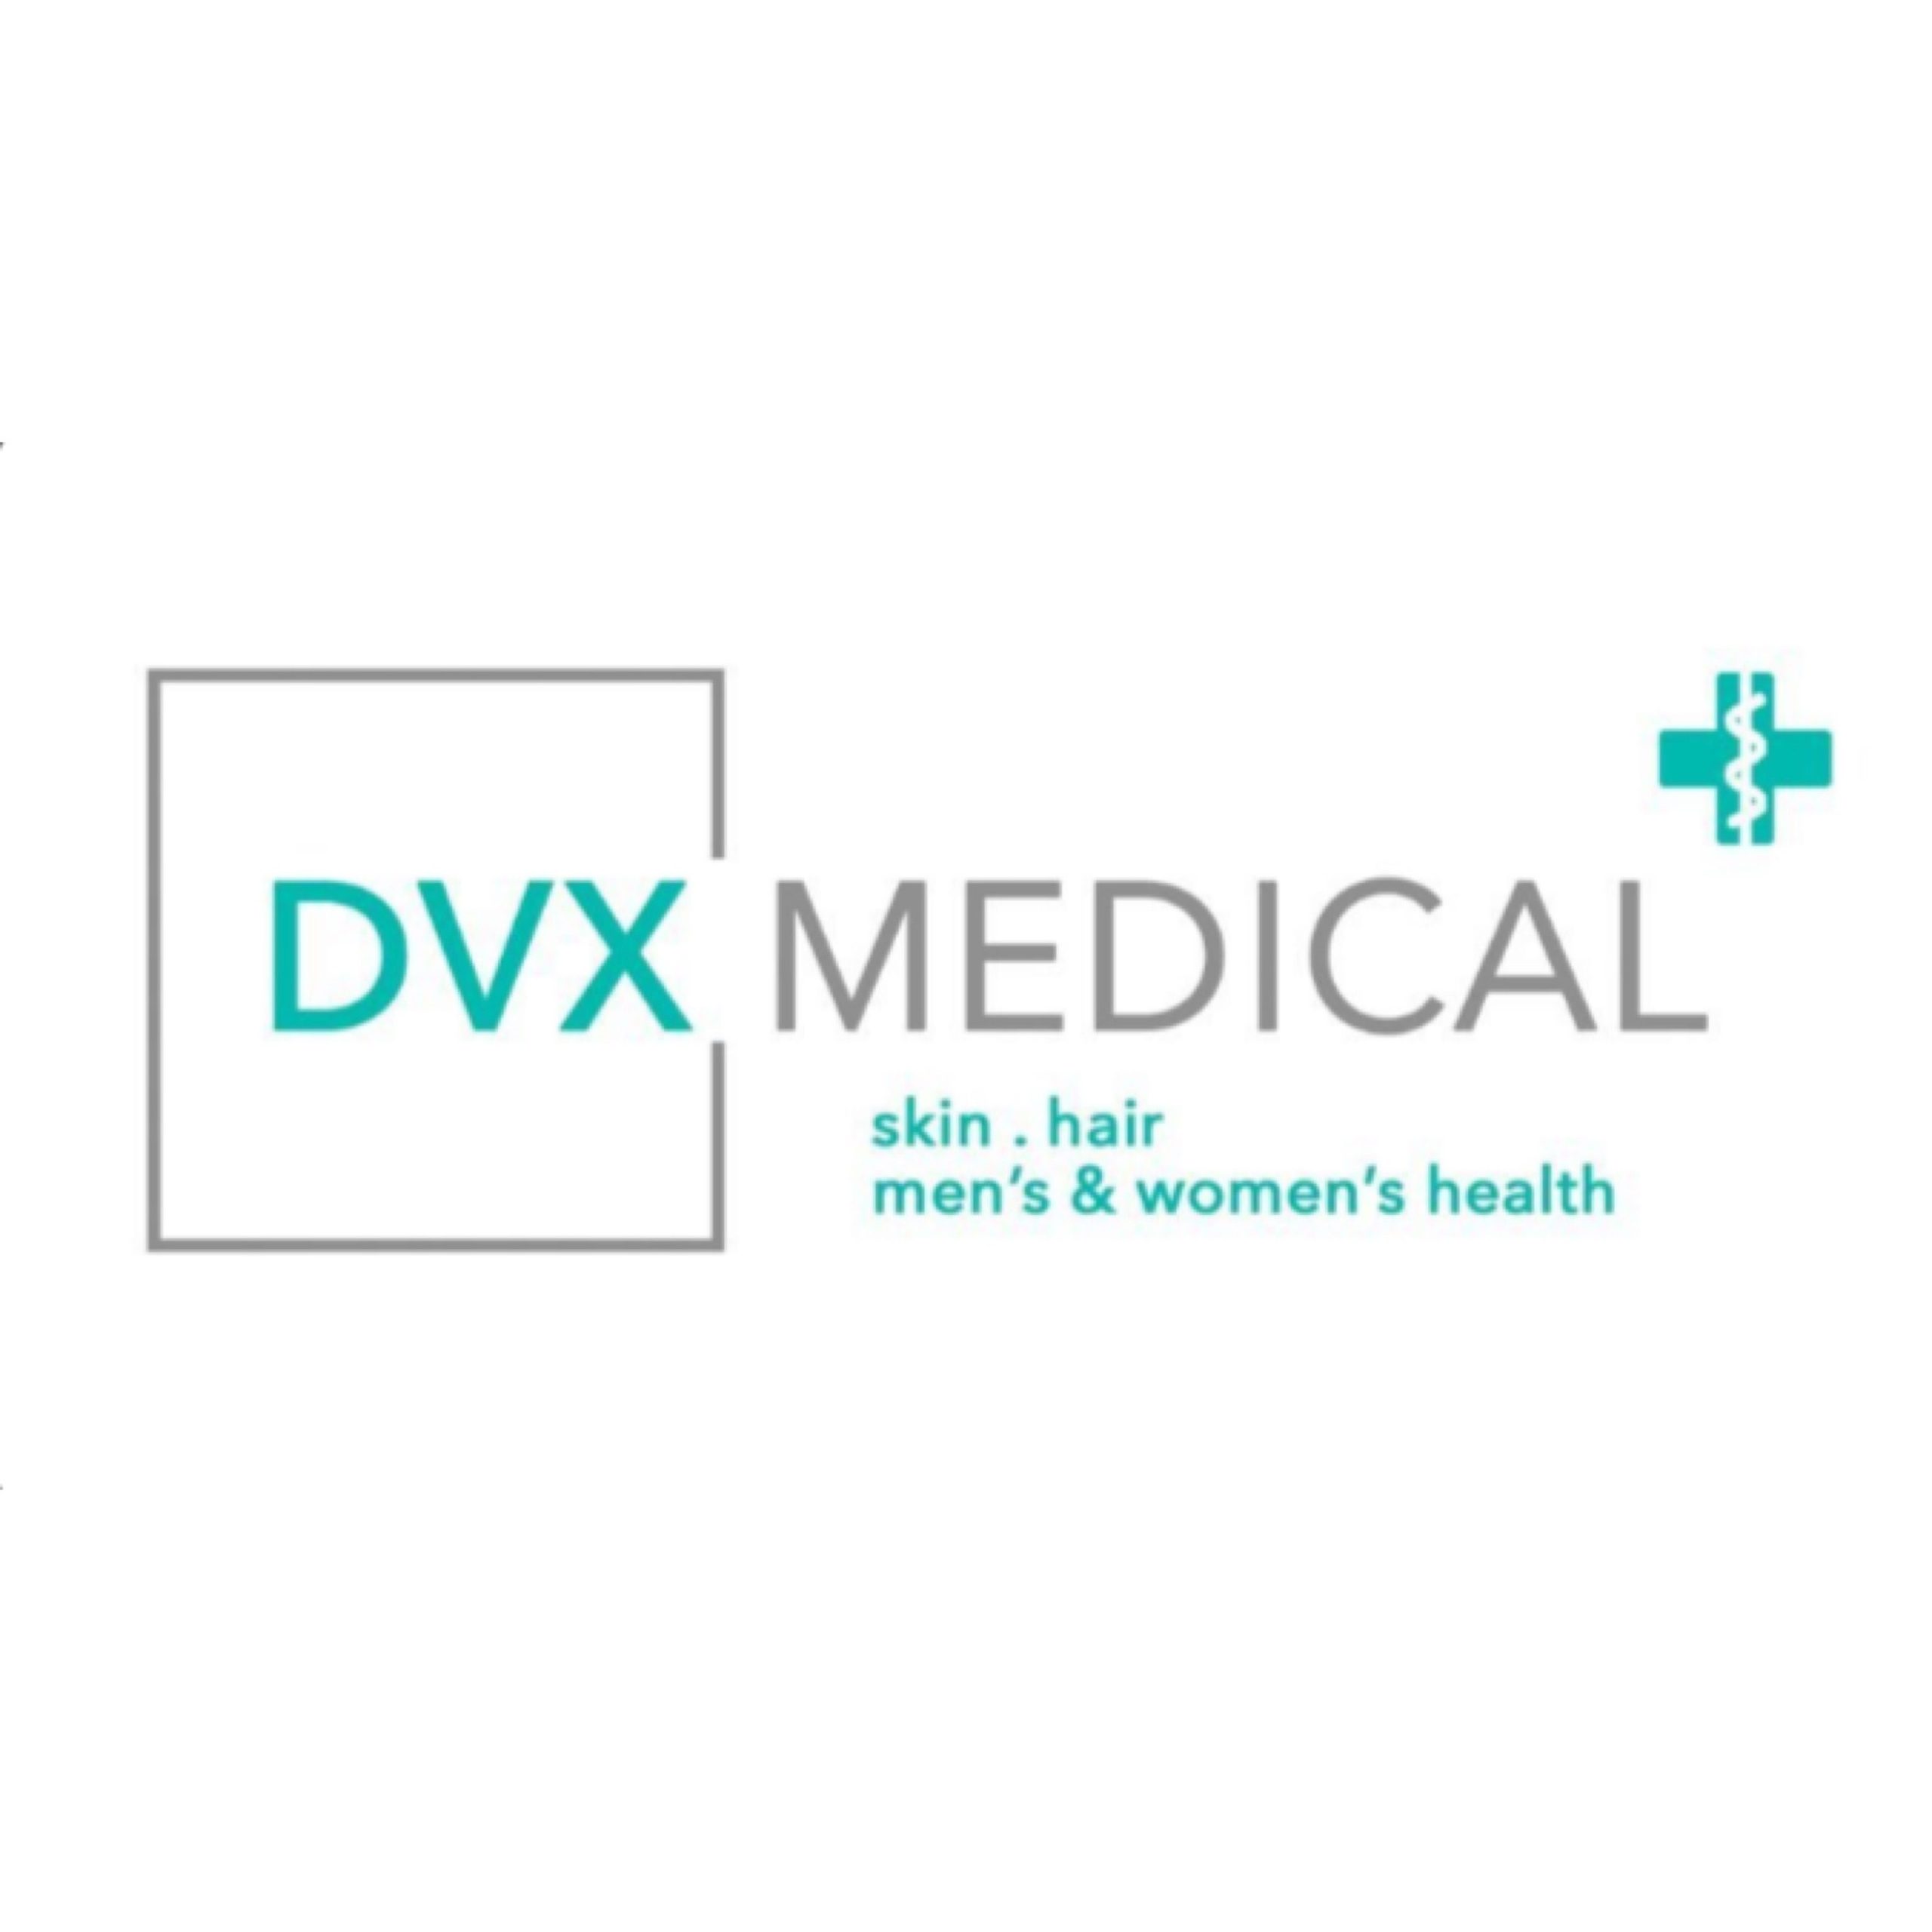 Lowongan Kerja DVX Medical Terbaru